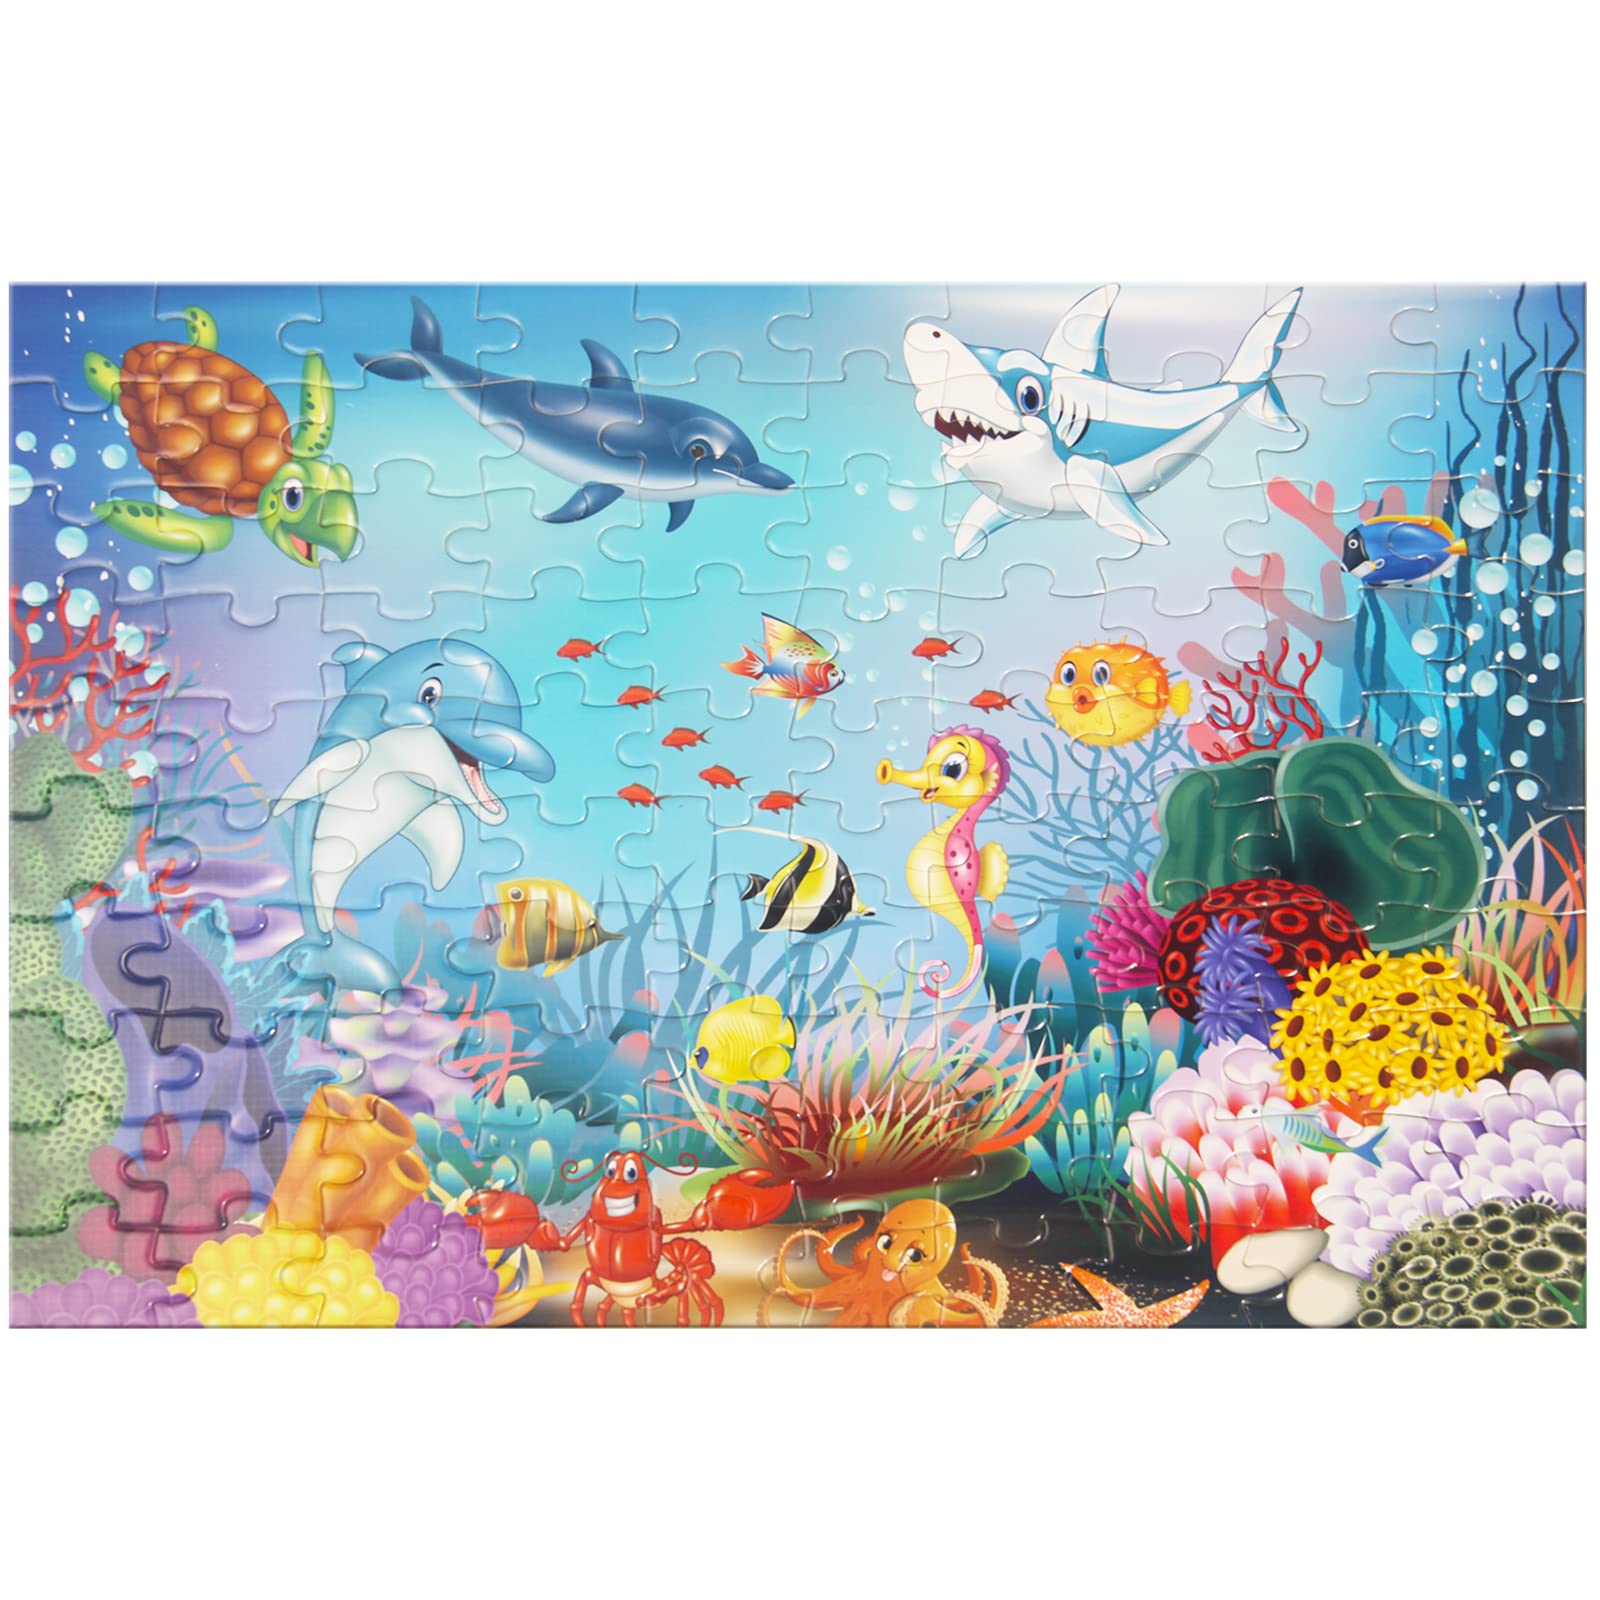 100 Piece Underwater World Jigsaw Puzzle